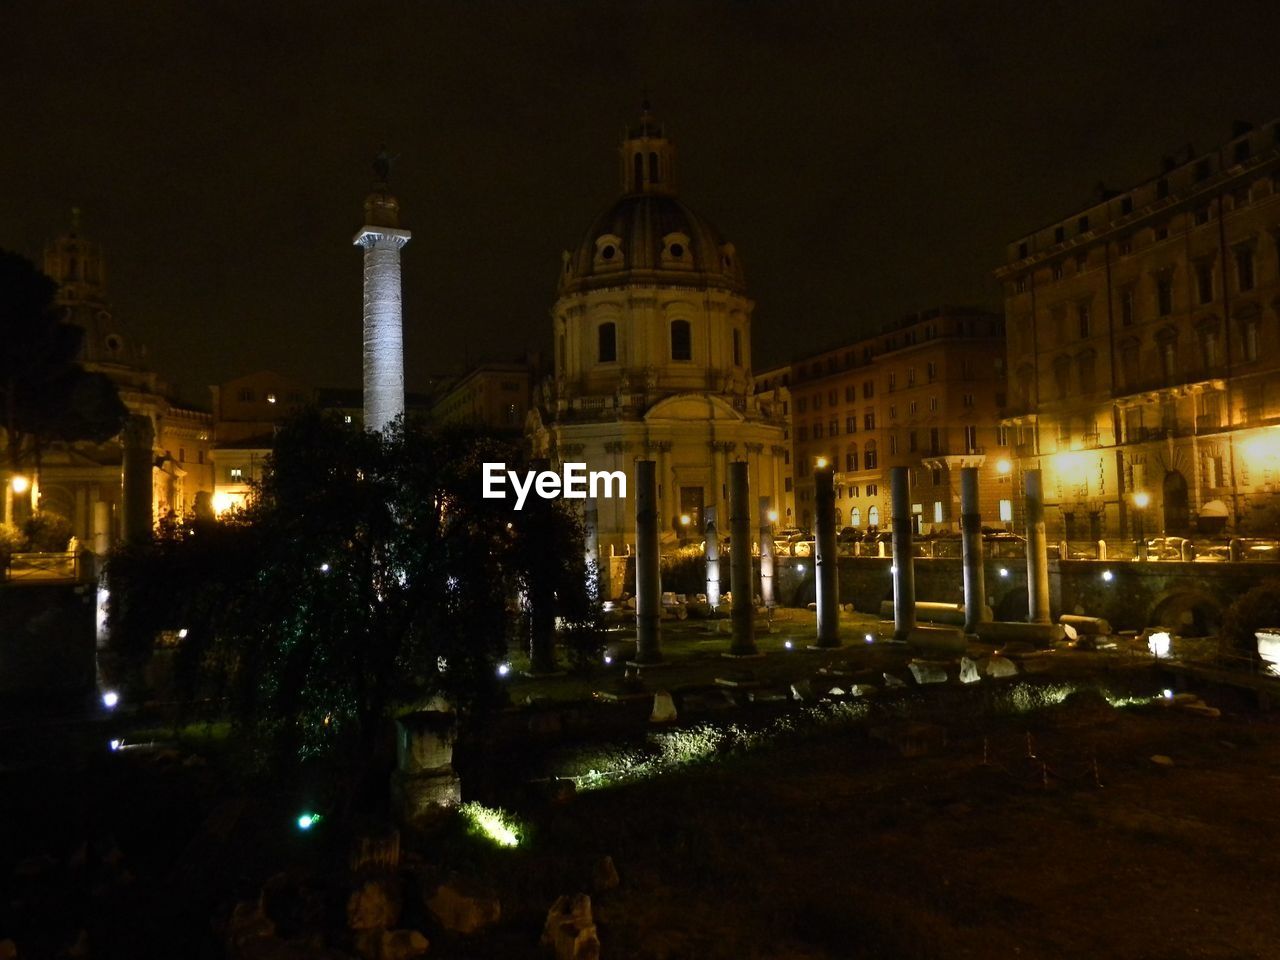 Trajan column by santissimo nome di maria al foro traiano church at night